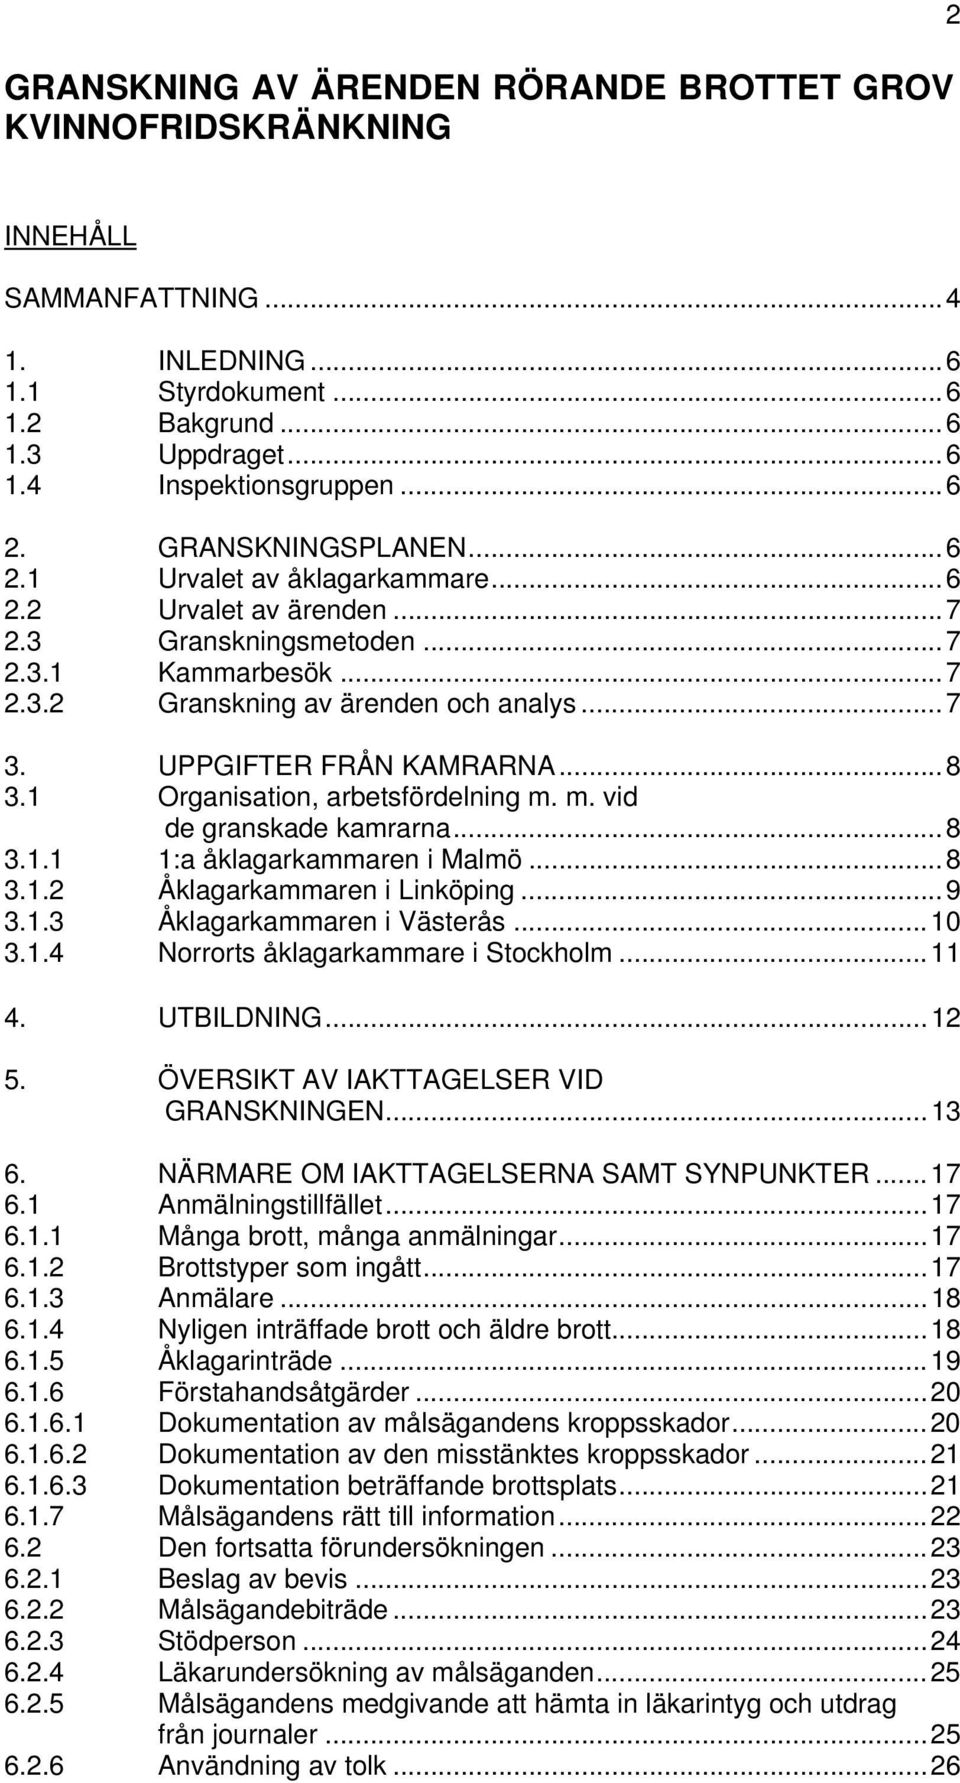 UPPGIFTER FRÅN KAMRARNA...8 3.1 Organisation, arbetsfördelning m. m. vid de granskade kamrarna...8 3.1.1 1:a åklagarkammaren i Malmö...8 3.1.2 Åklagarkammaren i Linköping...9 3.1.3 Åklagarkammaren i Västerås.